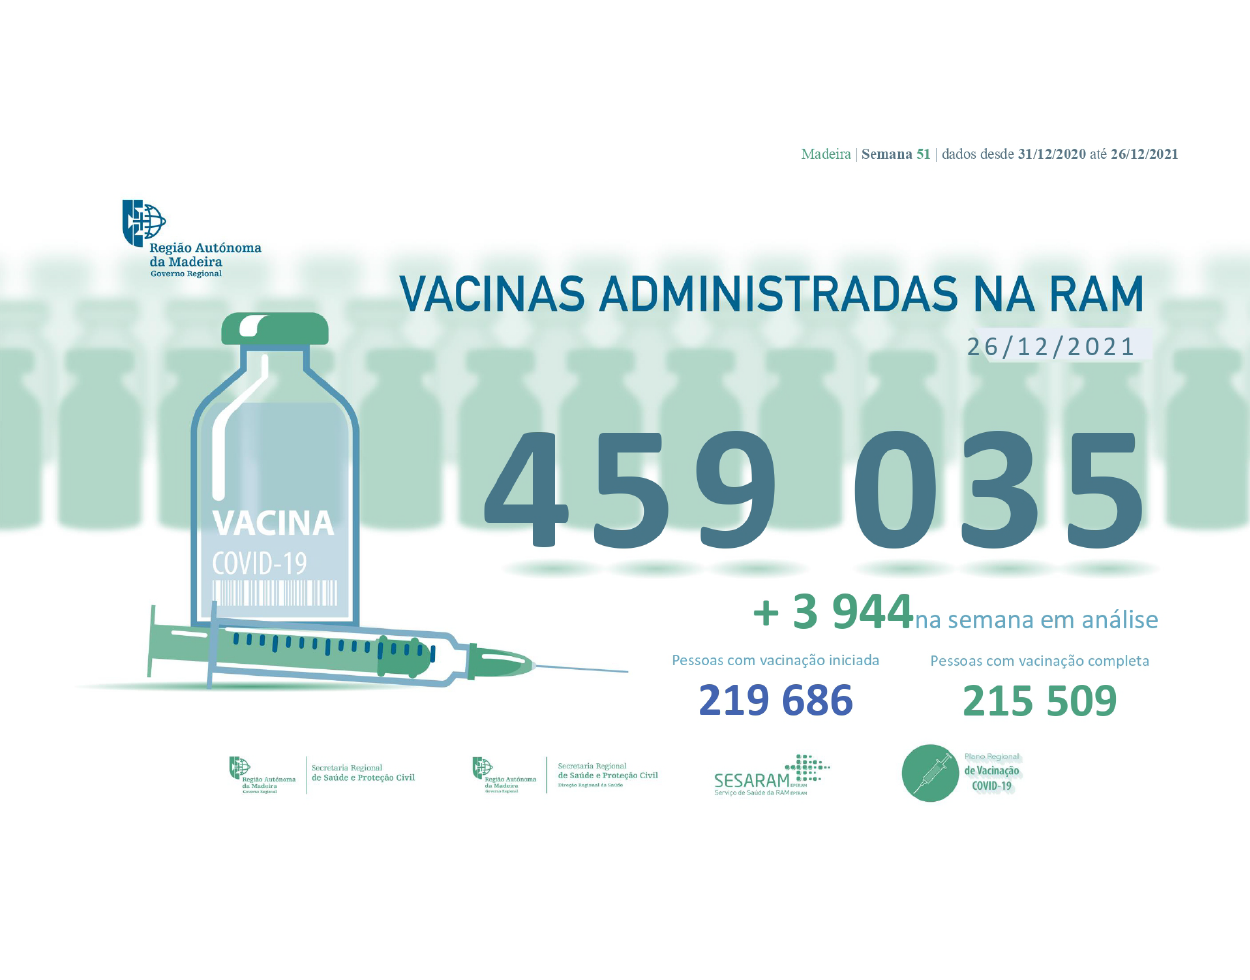 Administradas mais de 459 035 vacinas contra a COVID-19 na RAM